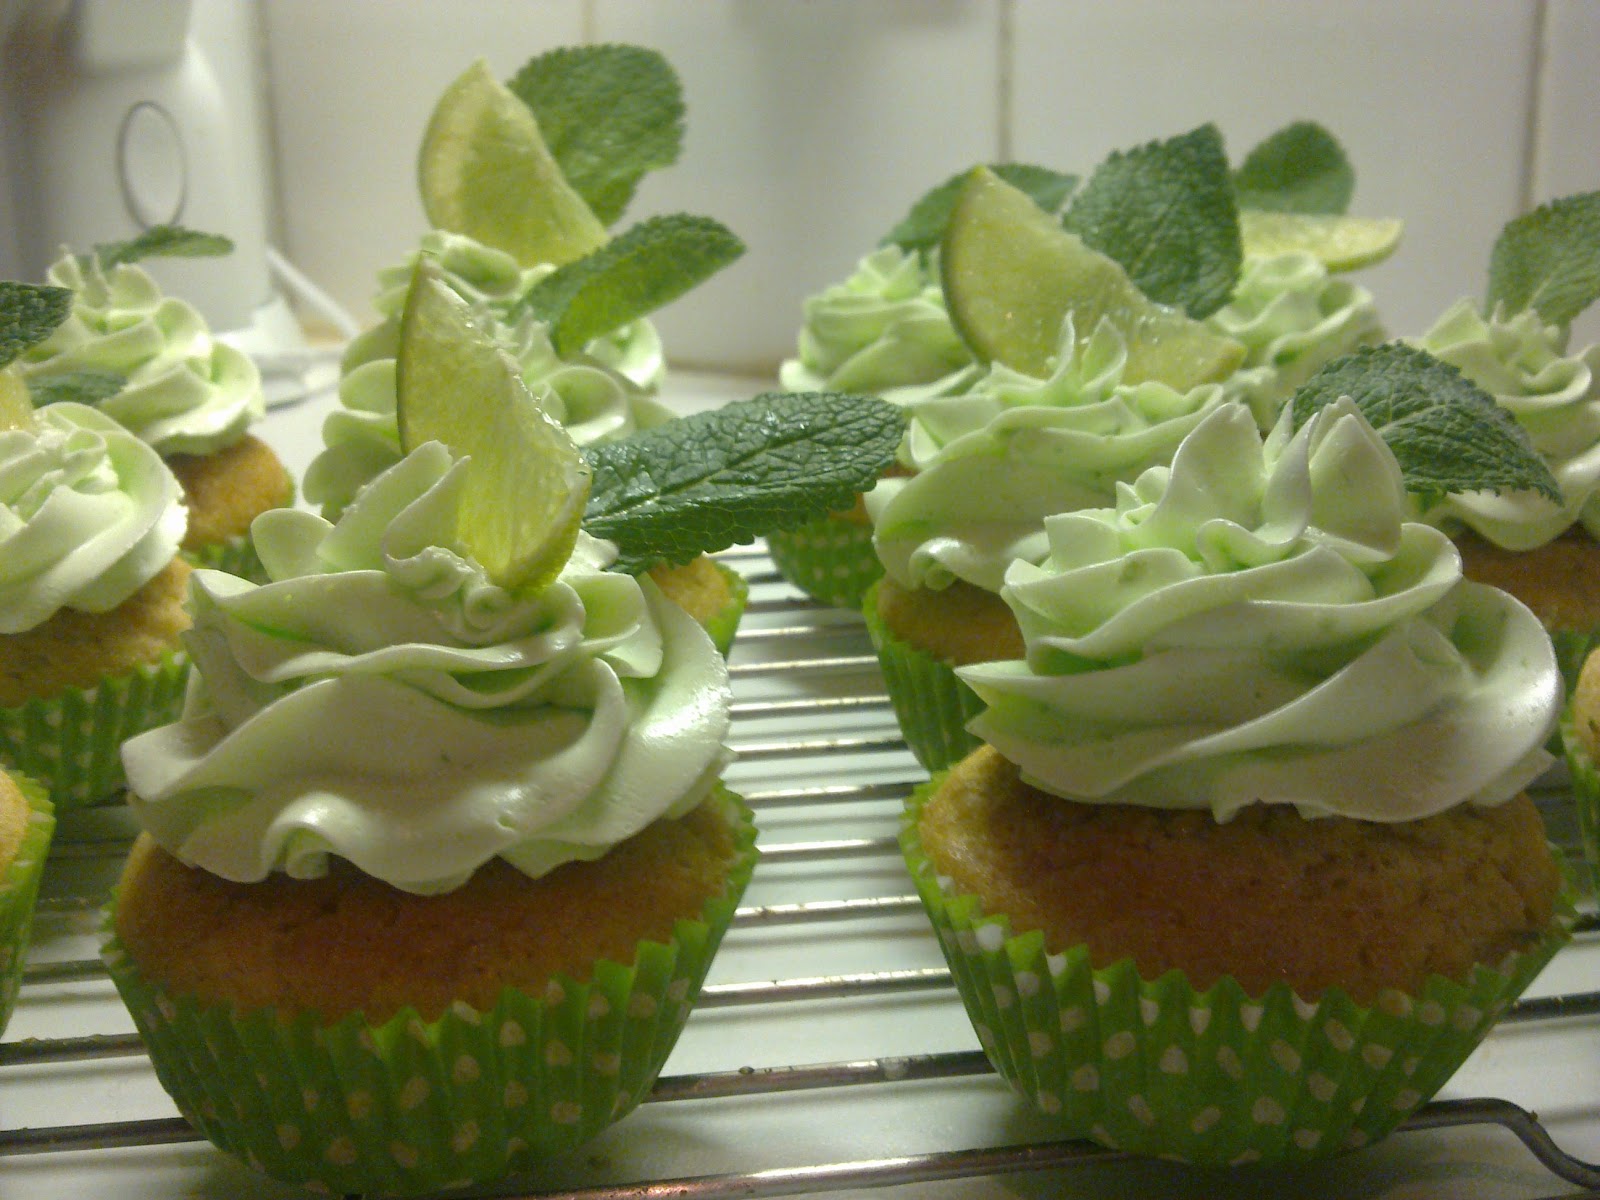 Baked and Beautiful: Mojito cupcakes